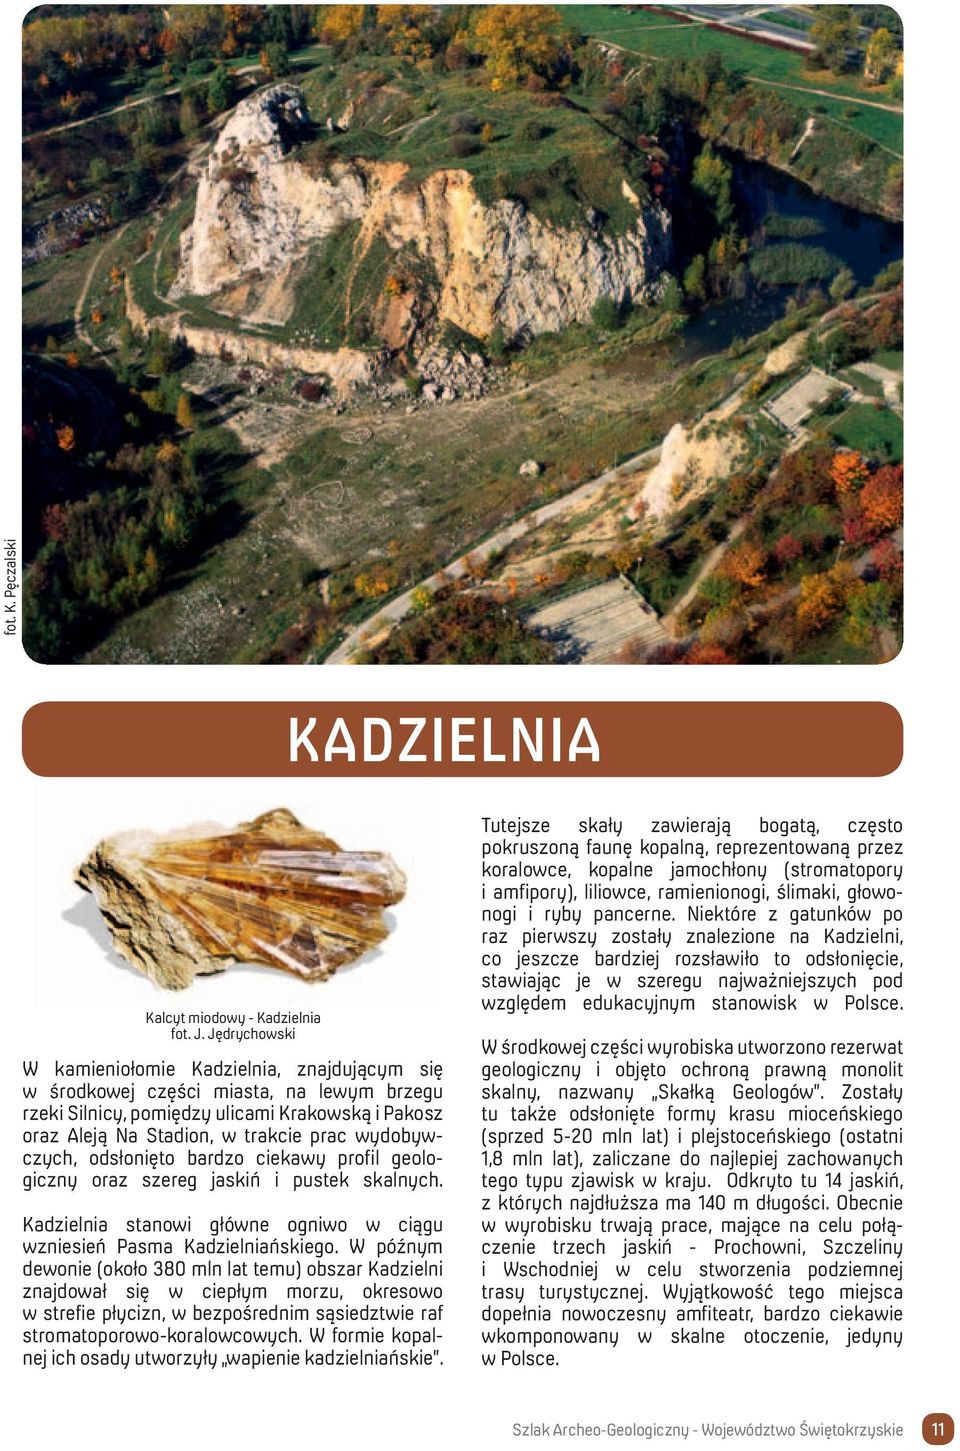 wydobywczych, odsłonięto bardzo ciekawy profil geologiczny oraz szereg jaskiń i pustek skalnych. Kadzielnia stanowi główne ogniwo w ciągu wzniesień Pasma Kadzielniańskiego.